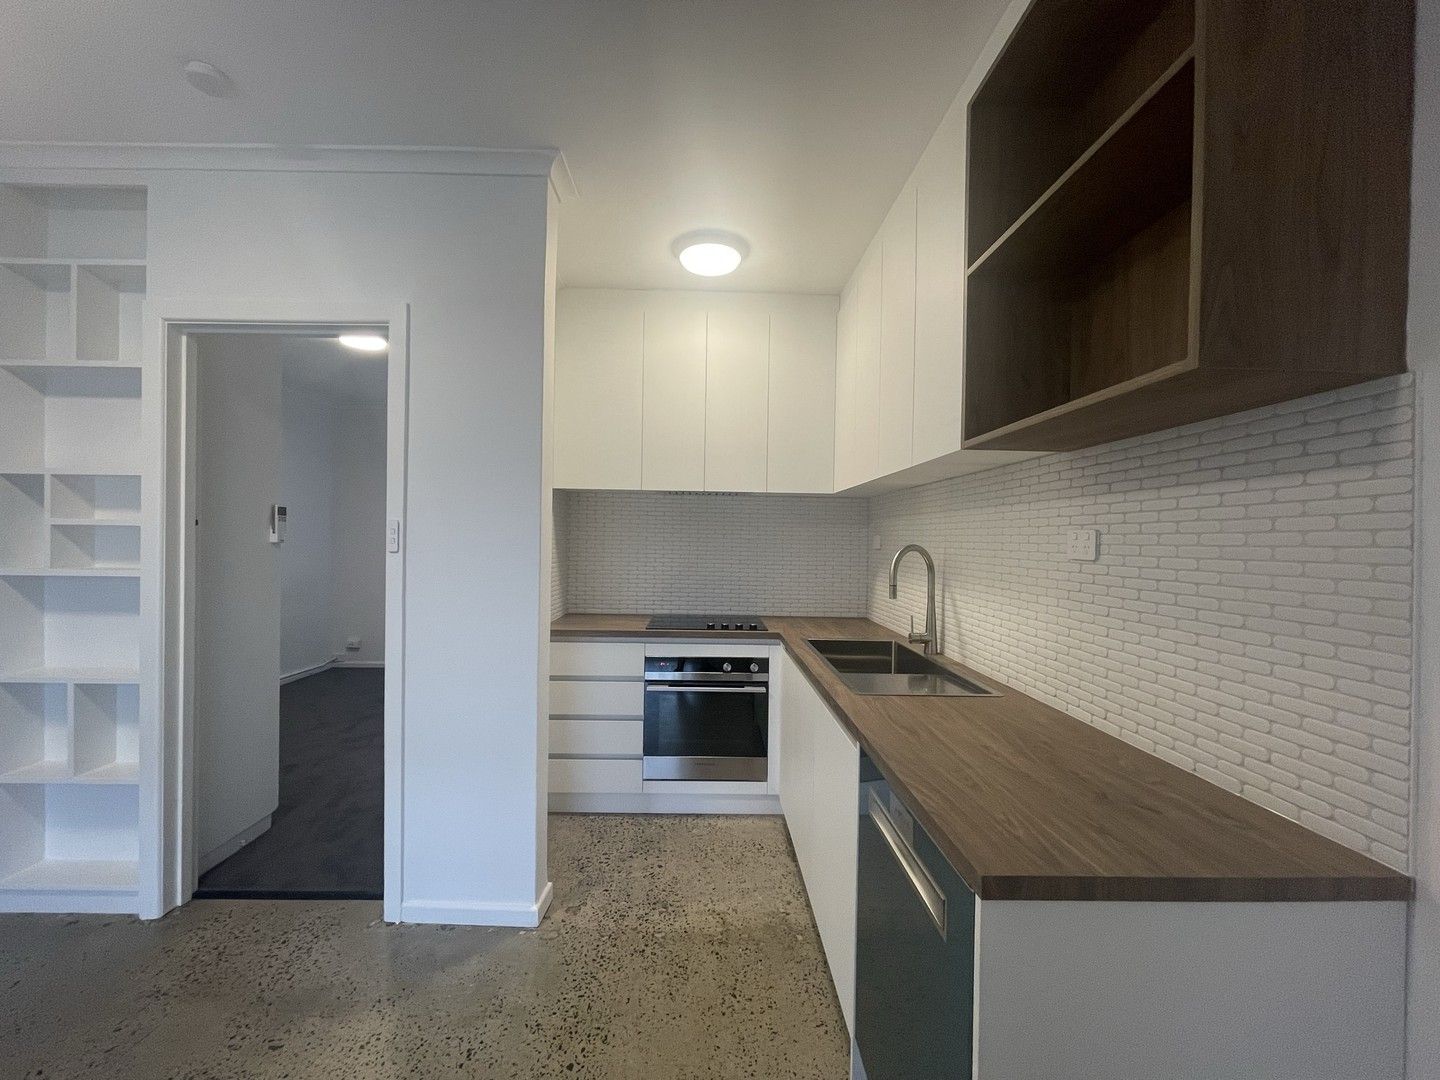 1 bedrooms Apartment / Unit / Flat in 6/58 Sargood Street ALTONA VIC, 3018